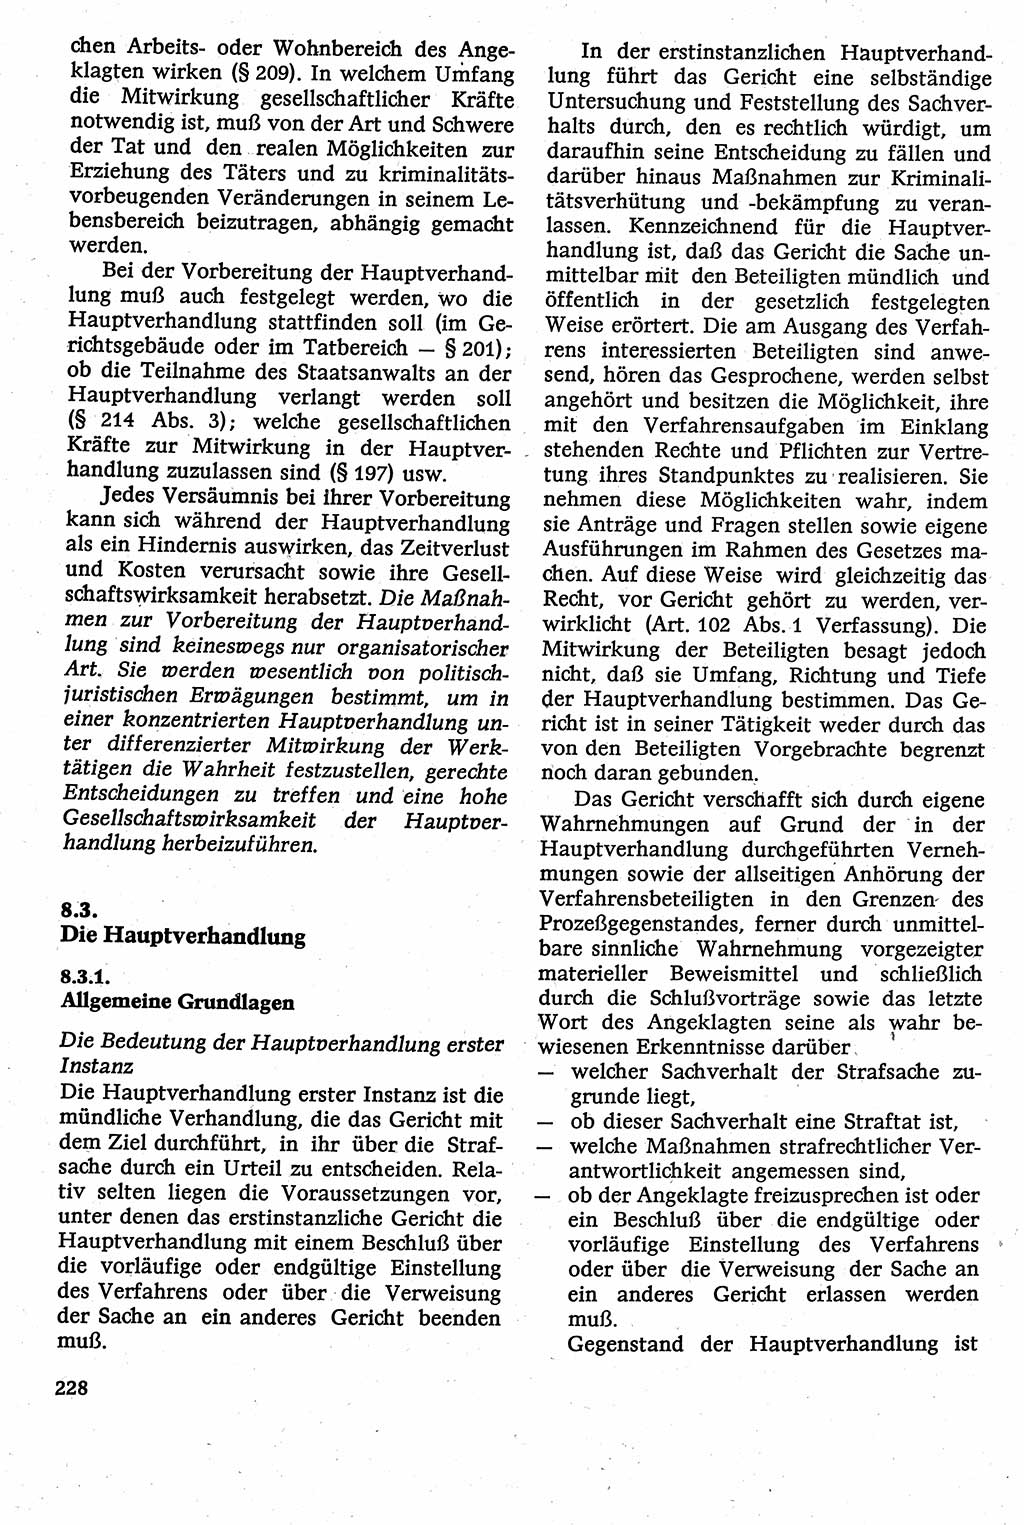 Strafverfahrensrecht [Deutsche Demokratische Republik (DDR)], Lehrbuch 1982, Seite 228 (Strafverf.-R. DDR Lb. 1982, S. 228)